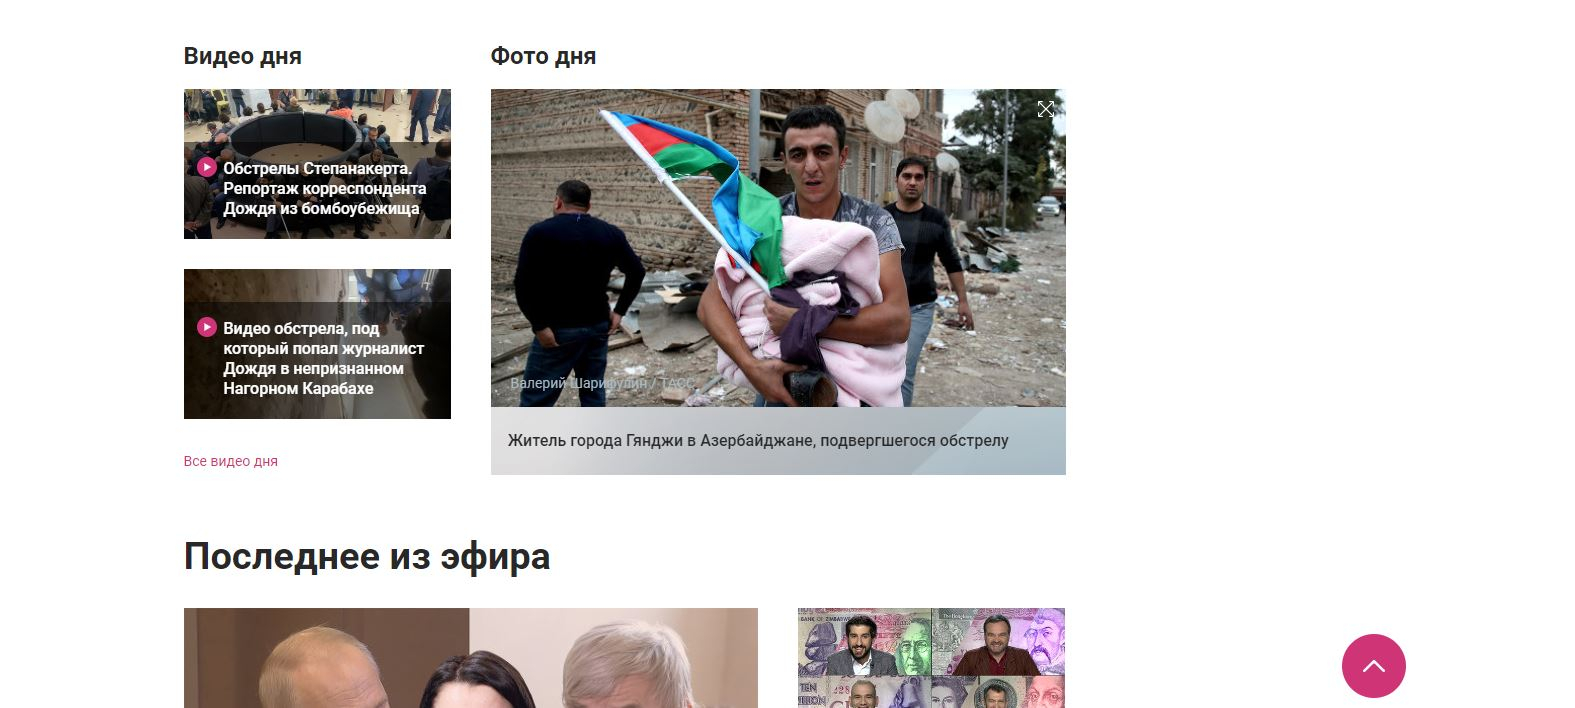 Российские СМИ выбрали снятый в Азербайджане снимок как